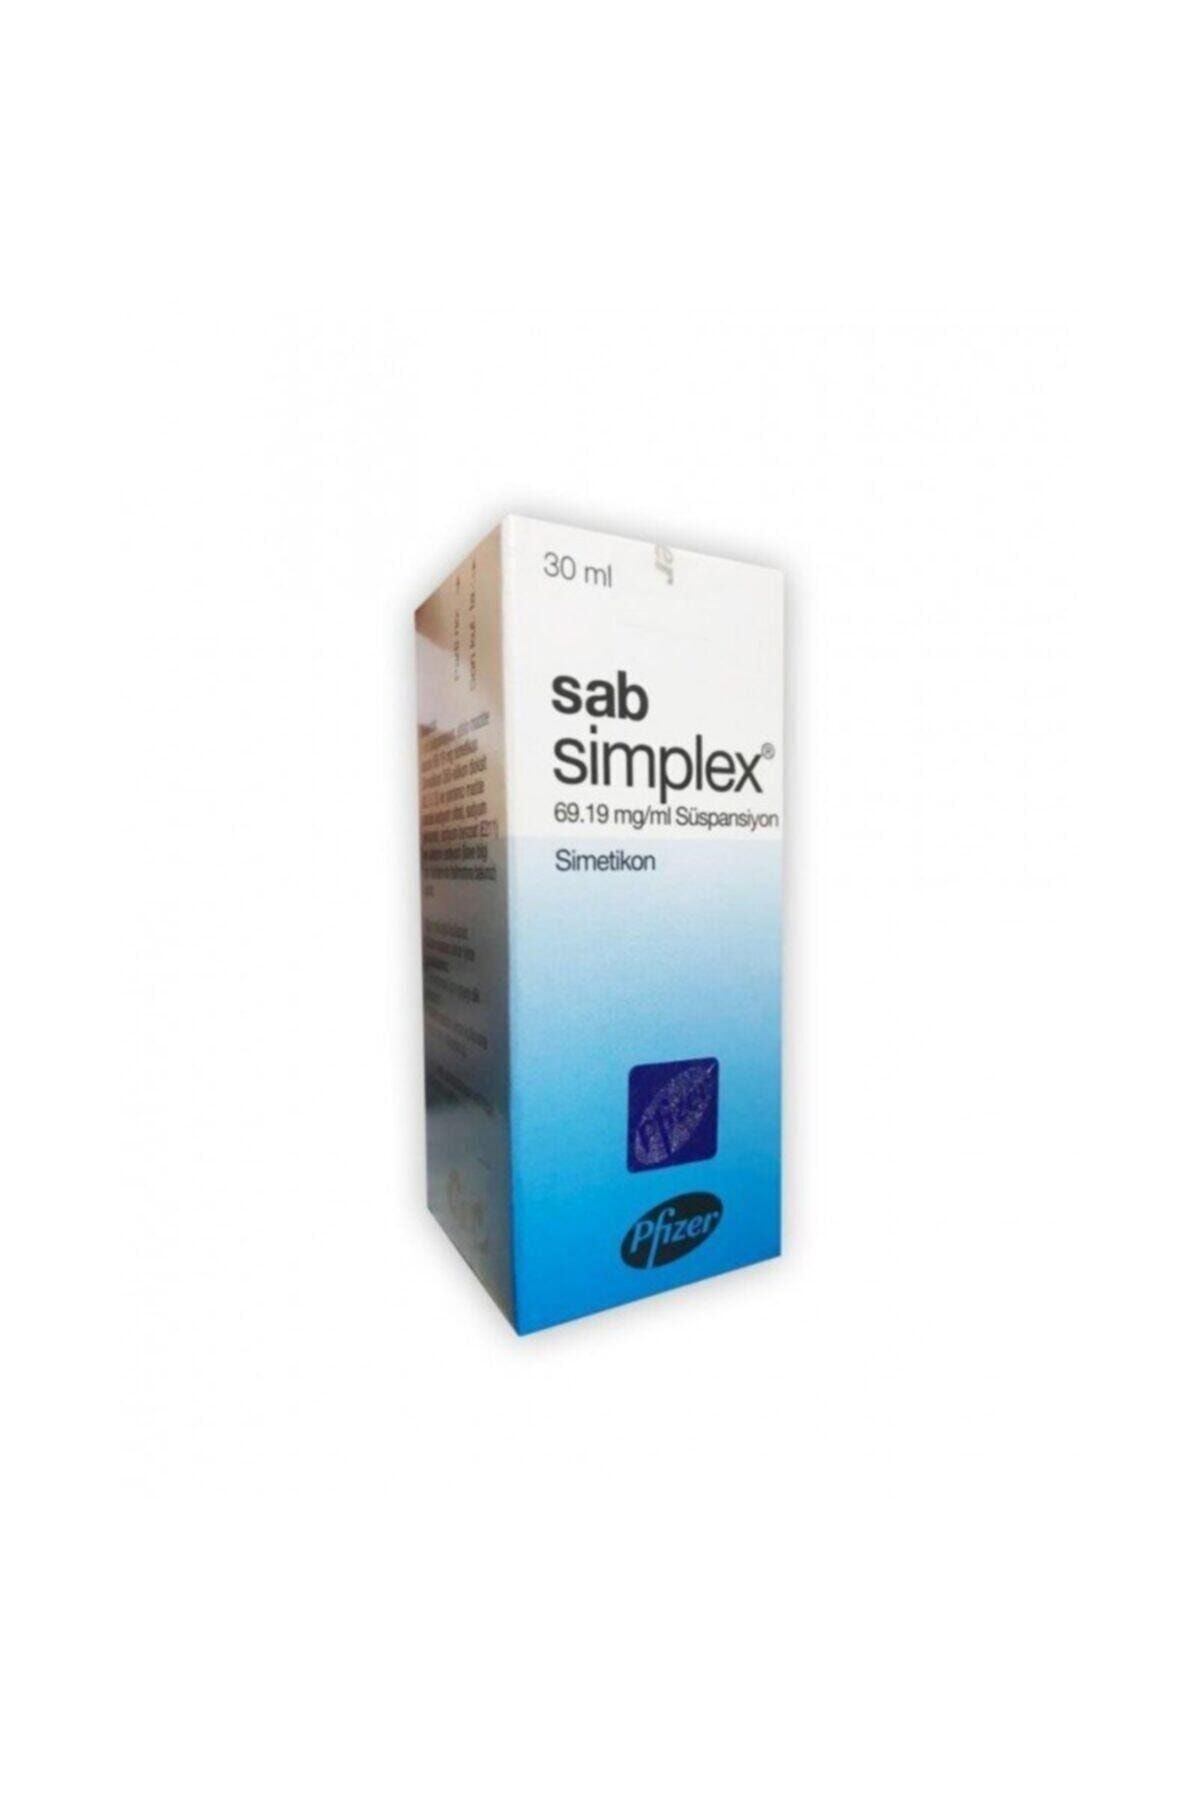 Pfizer Sab Simplex 69.19 Mg/ml Süspansiyon 30ml